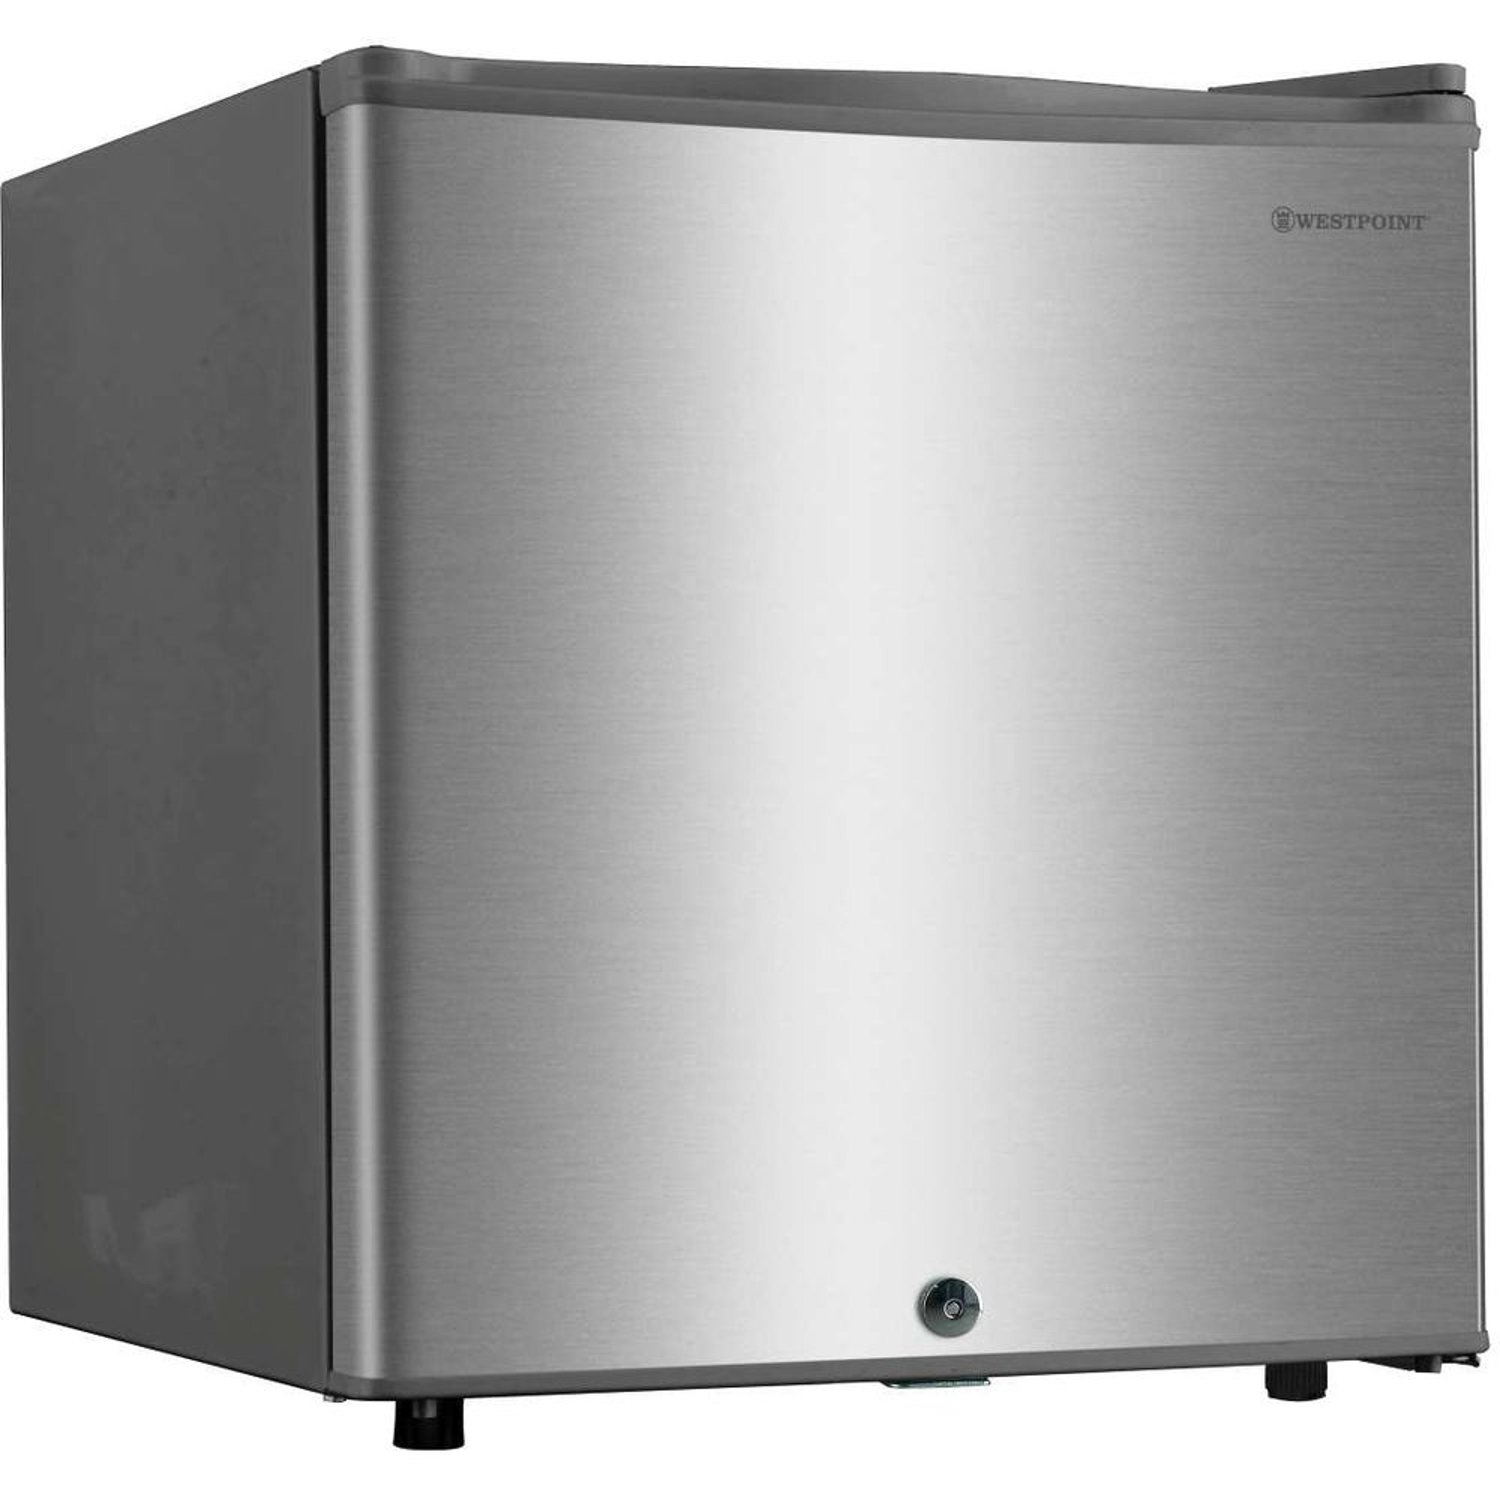 WestPoint 52L Defrost Refrigerator Silver WROK521EI